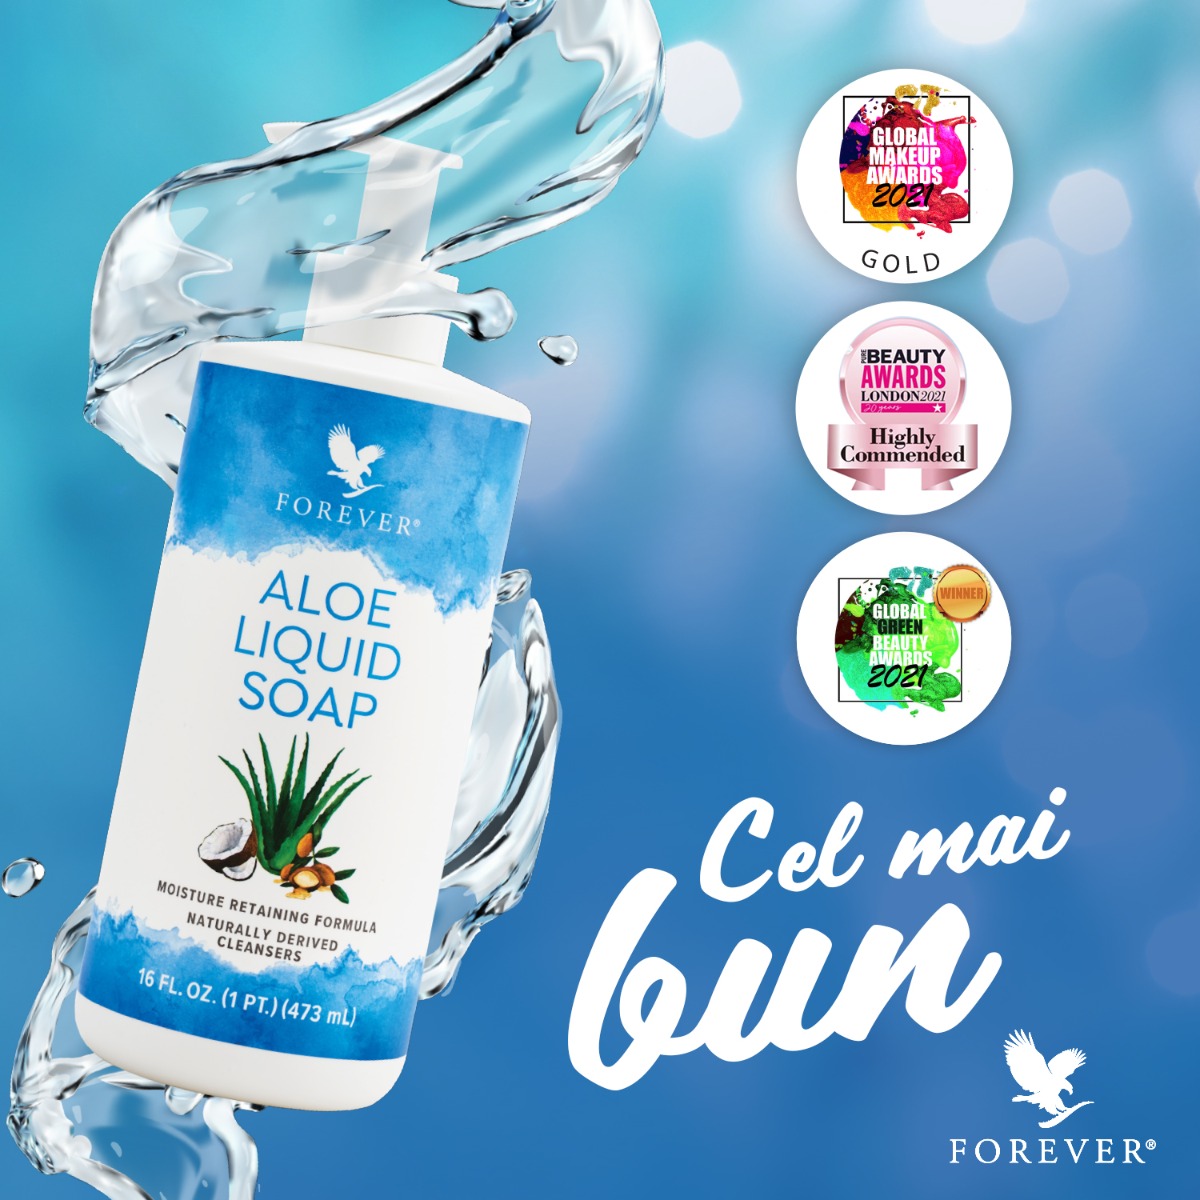 Aloe Liquid Soap - oferta noastră pentru mâini curate